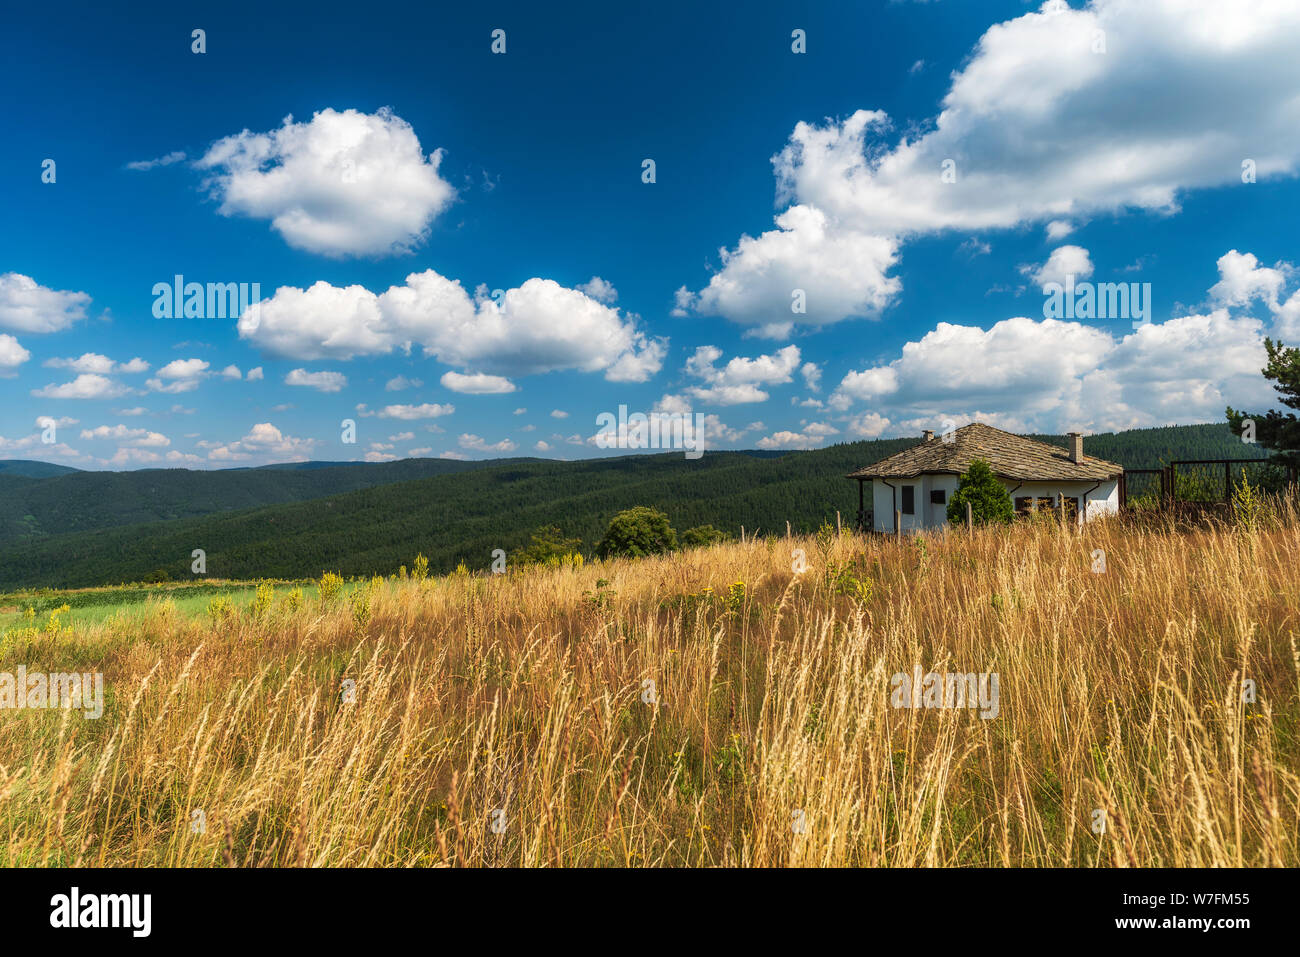 Tolle Berglandschaft mit blauer Himmel mit weißen Wolken, natürliche Outdoor reisen Hintergrund. Rhodopen Gebirge, Bulgarien, Churen Dorf Stockfoto